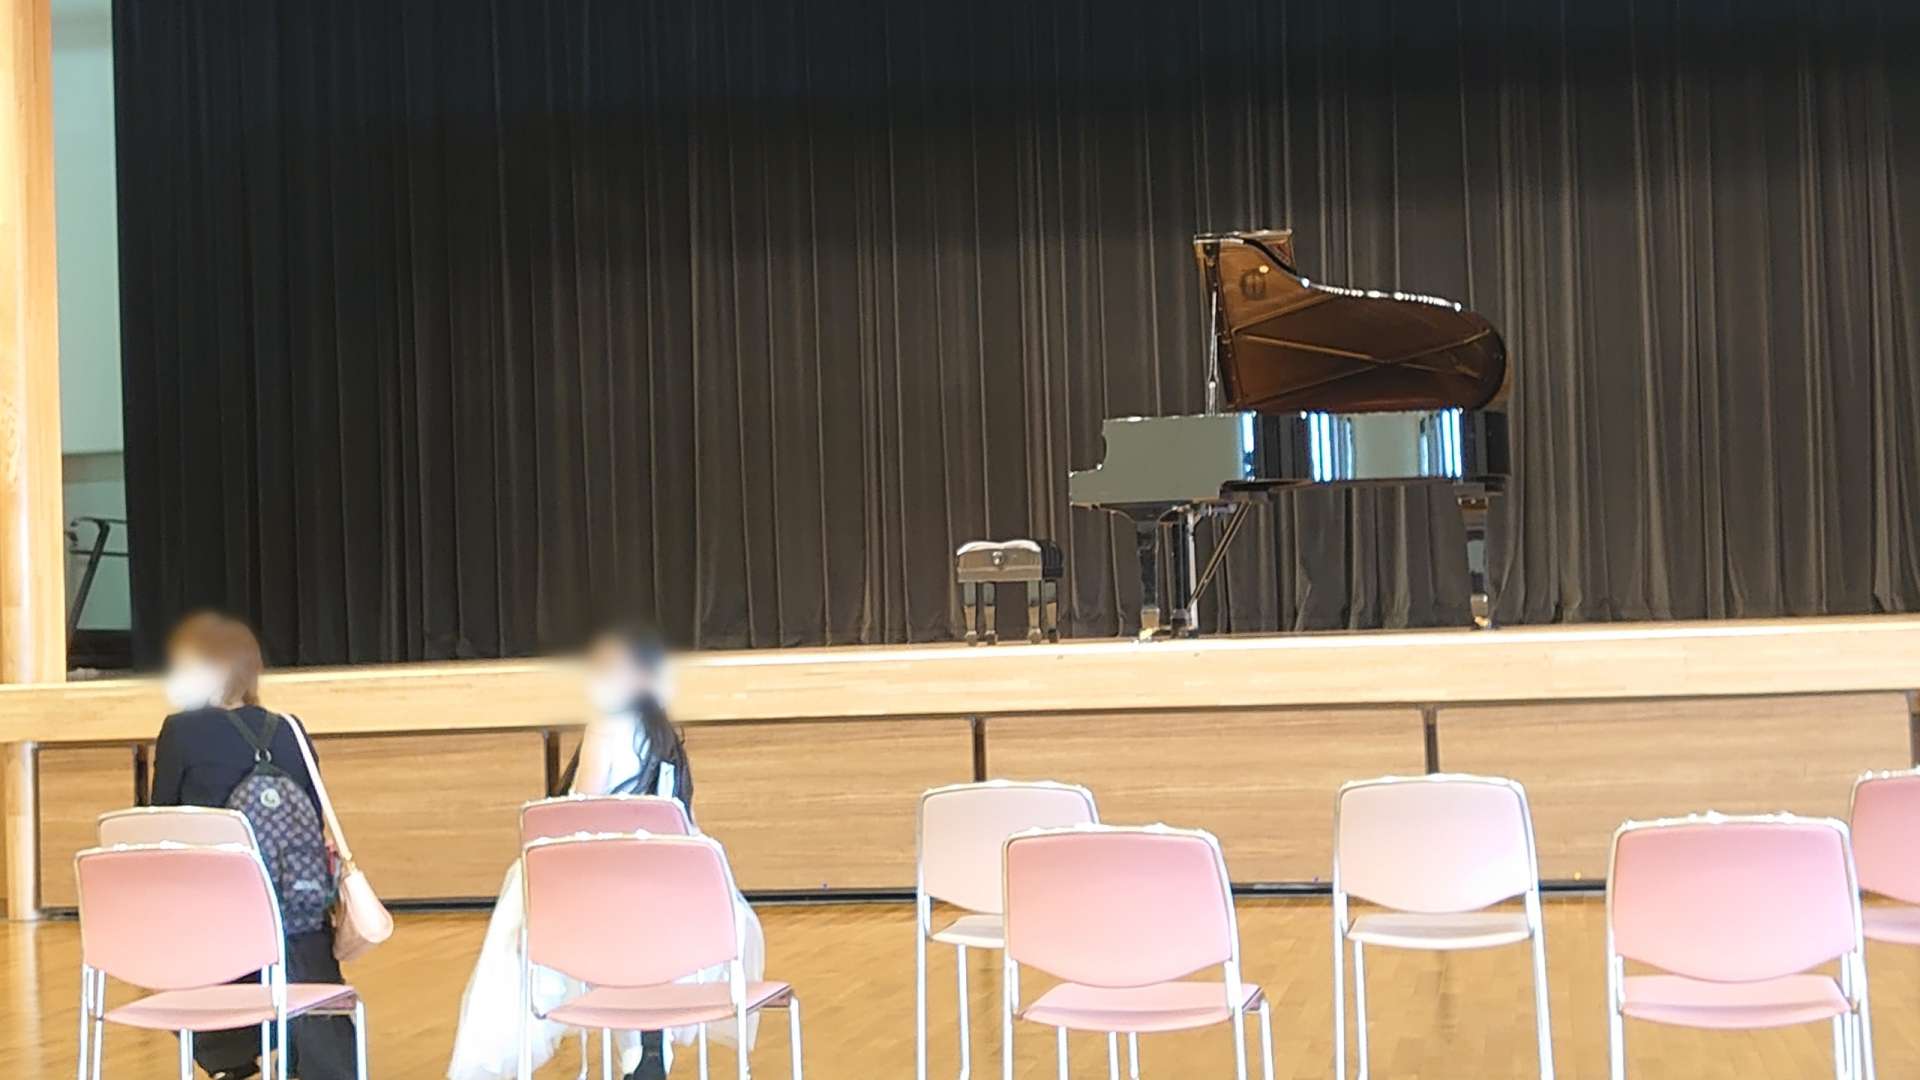 札幌市|第2回グランディール音楽コンクールピアノ部門東京予選審査がありました【音楽工房G.M.P】